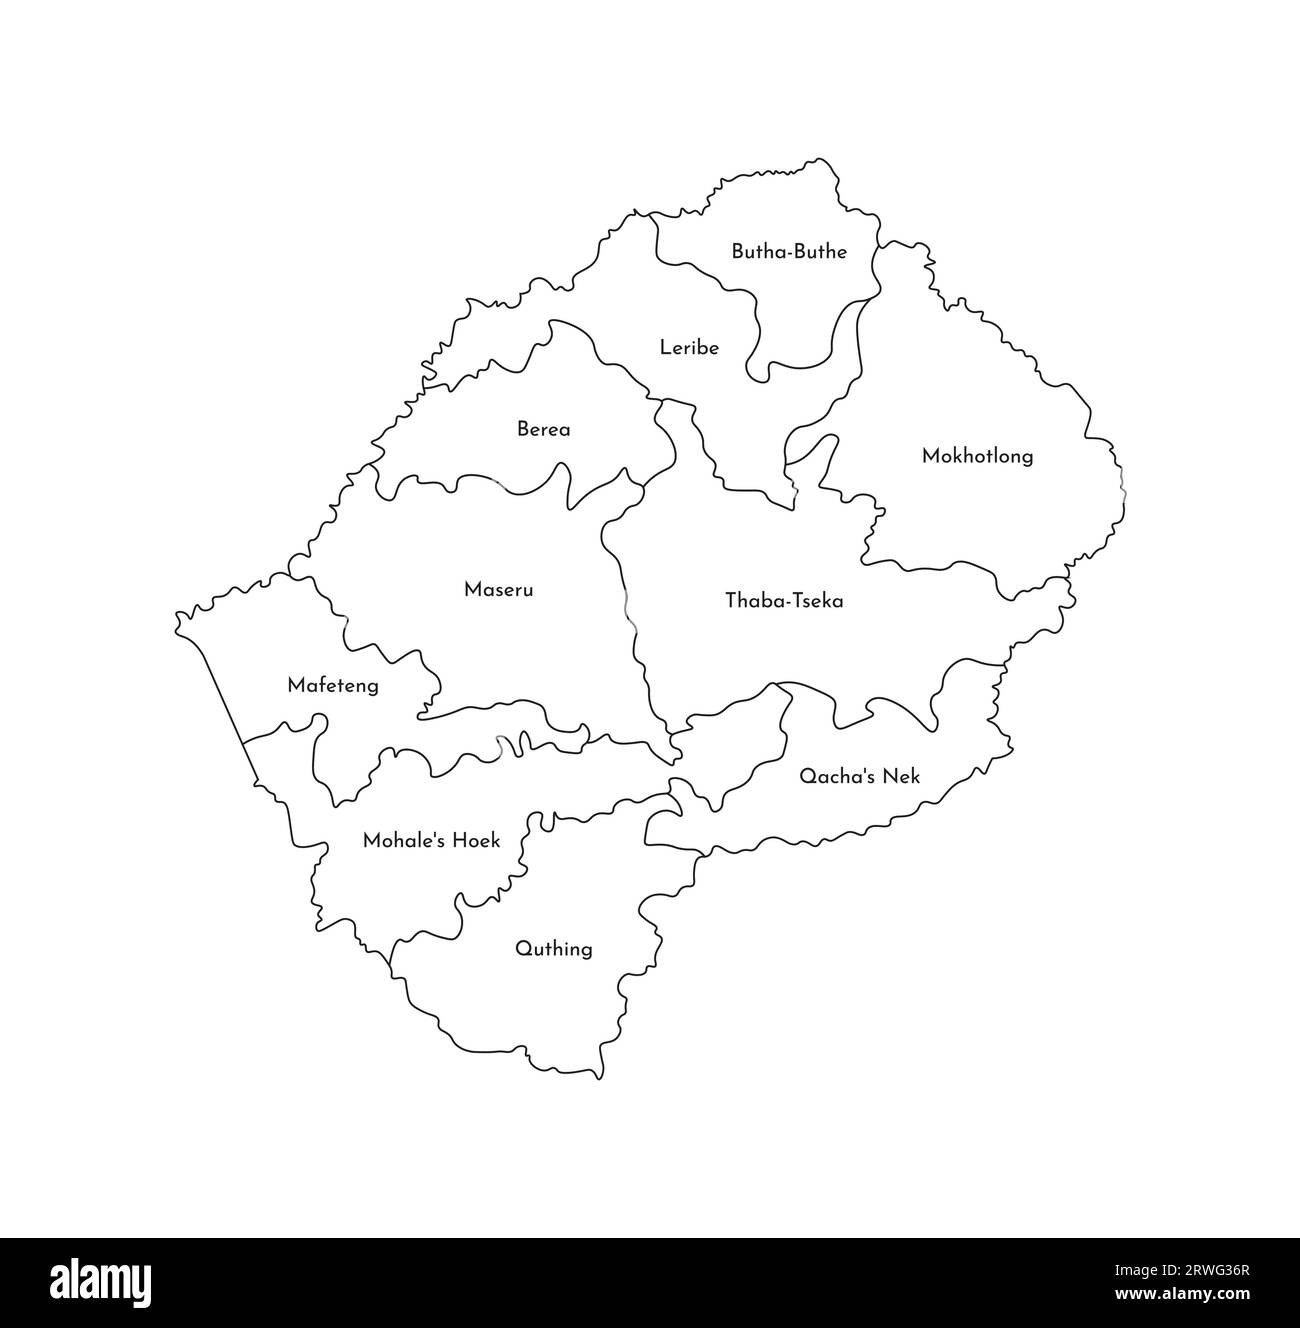 Illustrazione vettoriale isolata della mappa amministrativa semplificata del Lesotho. Confini e nomi dei distretti (regioni). Silhouette nere. Illustrazione Vettoriale